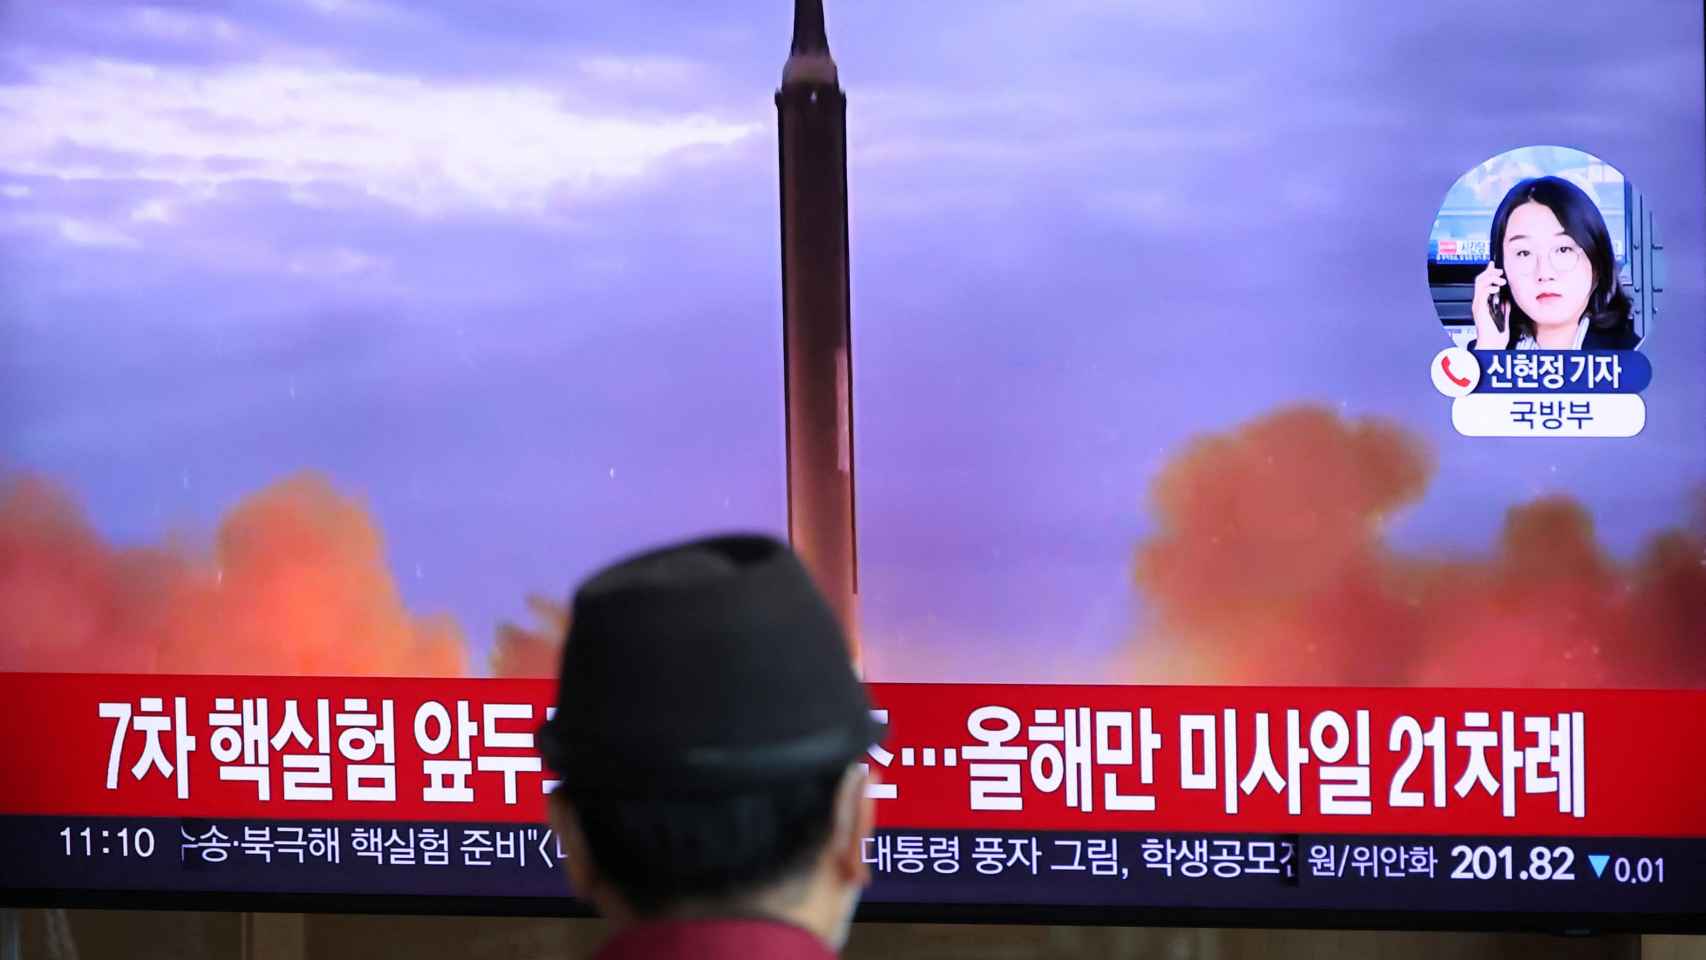 Un hombre mira un televisor que transmite un informe de noticias sobre Corea del Norte disparando un misil balístico sobre Japón, en una estación de tren en Seúl, Corea del Sur, el 4 de octubre de 2022